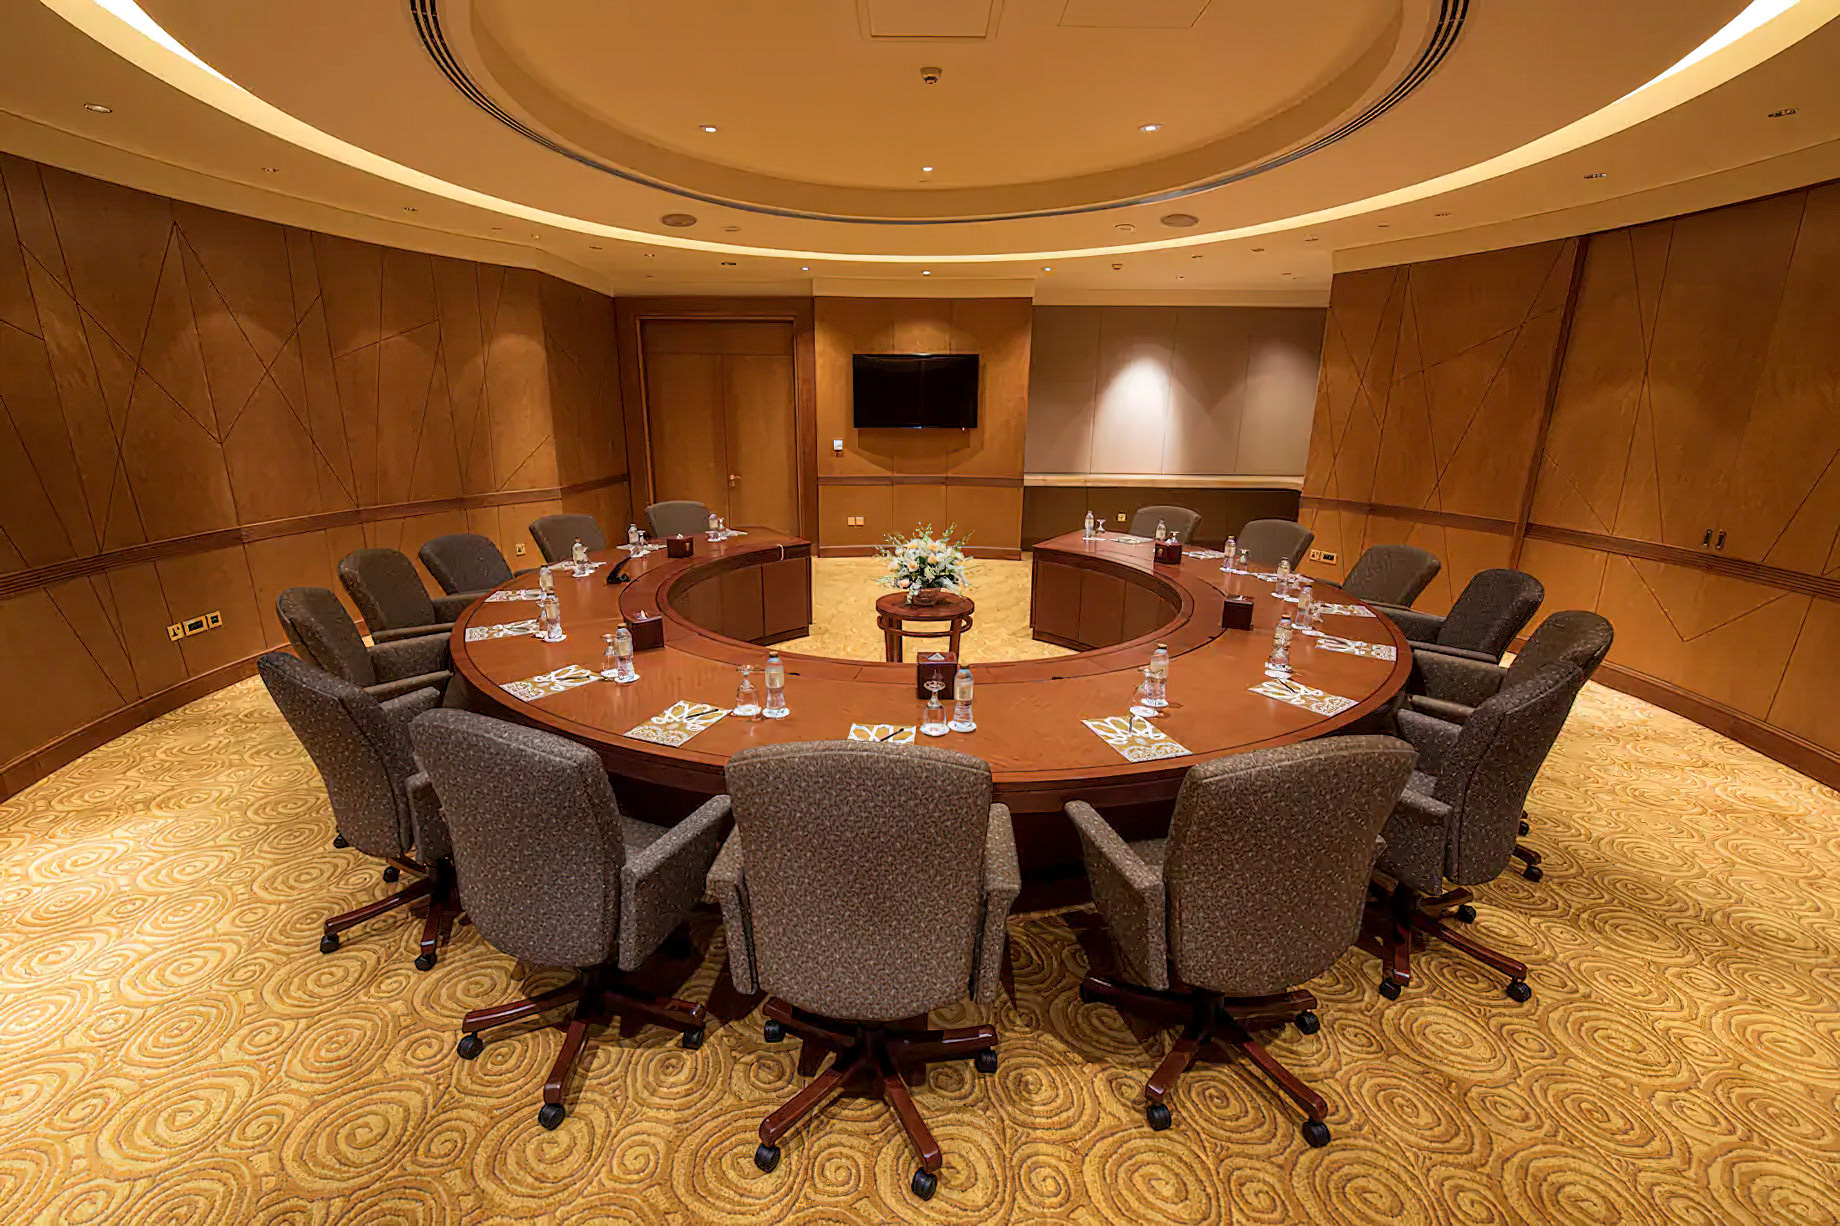 Emirates Palace Abu Dhabi Hotel – Abu Dhabi, UAE – Conference Room